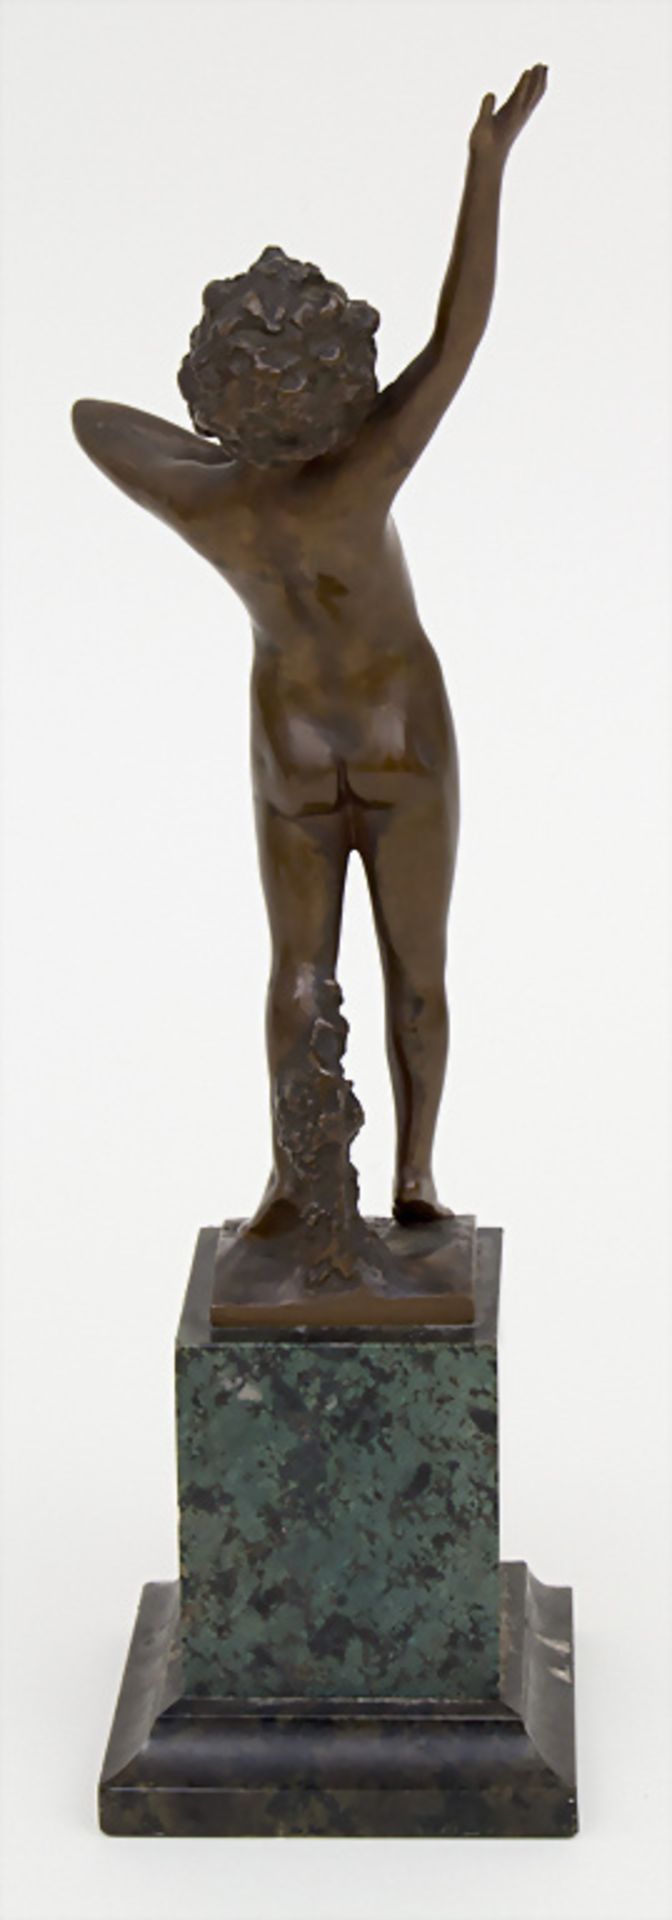 Bronzeskuptur 'Mein ganzer Reichthum ist mein Lied' / 'All my wealth is my song'Technik: Bronze, - Image 2 of 3